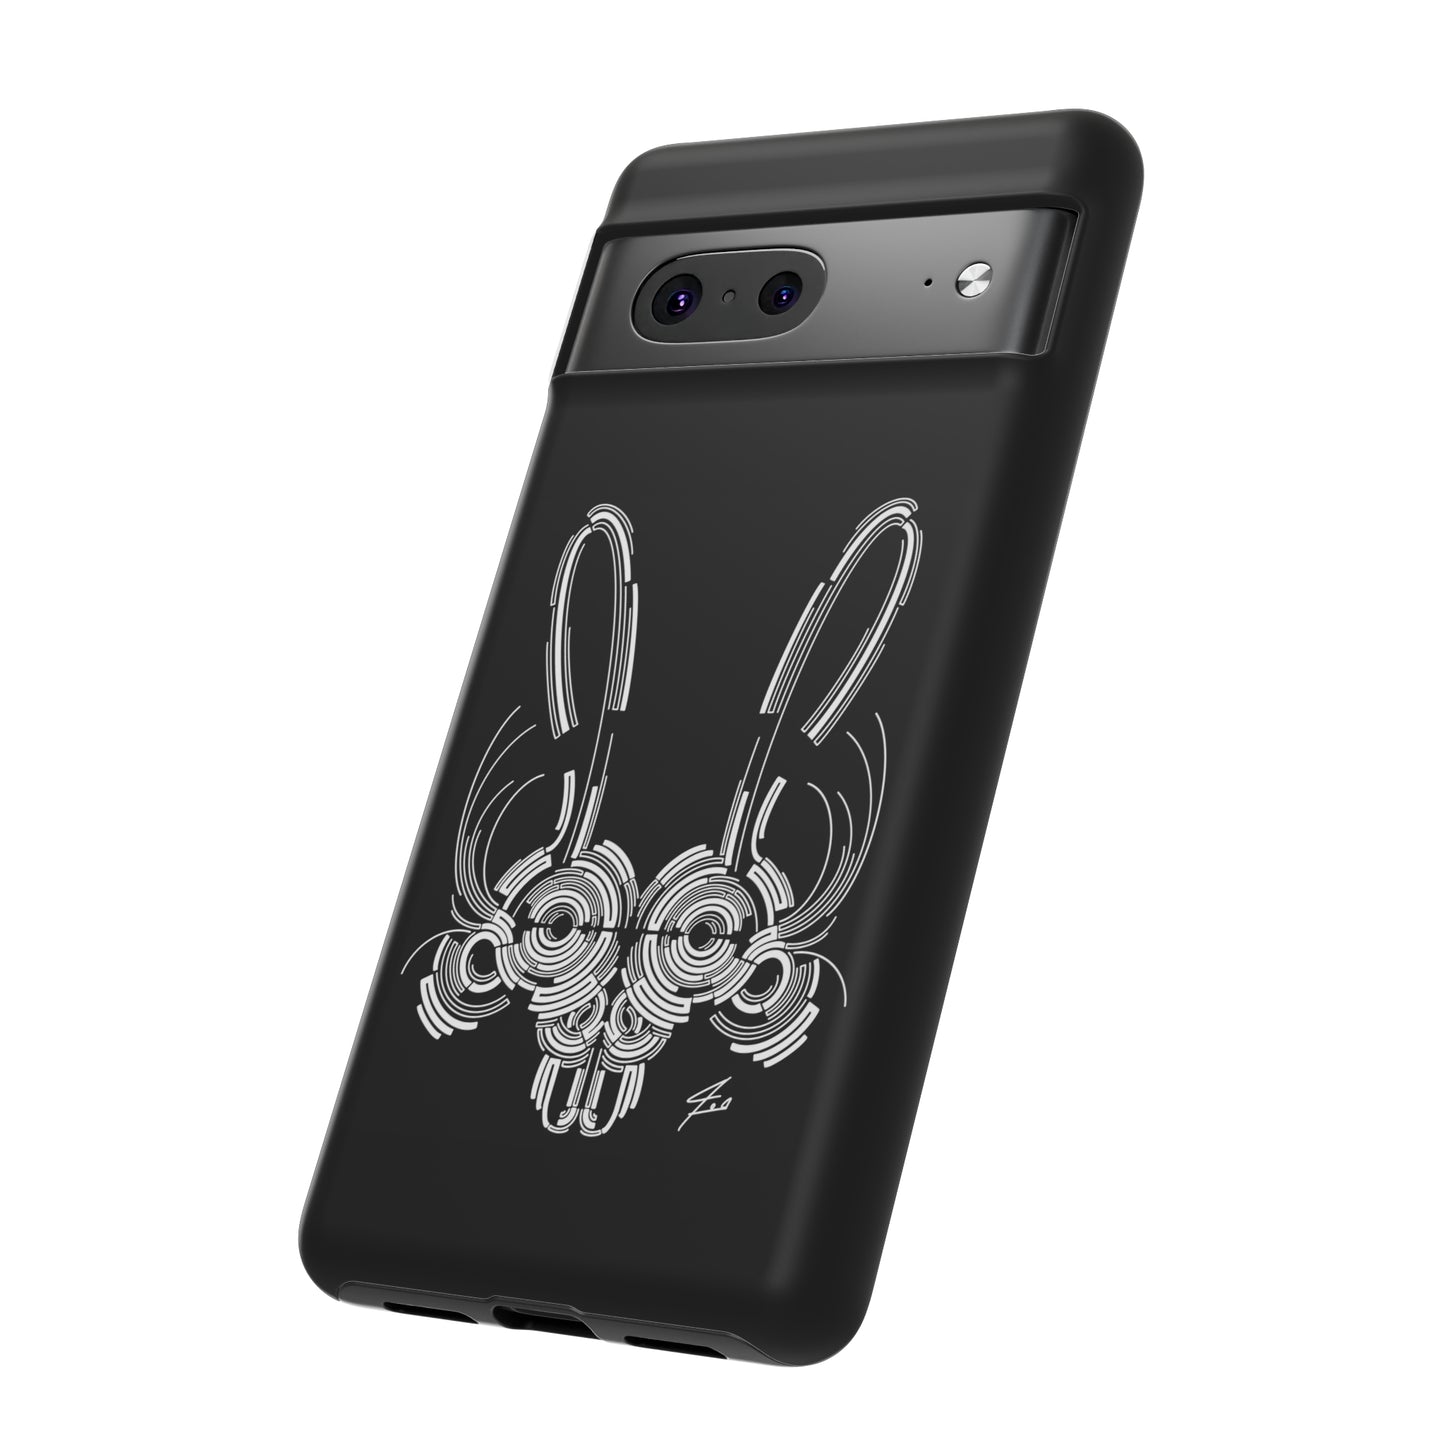 Bunny Design Tough Cases